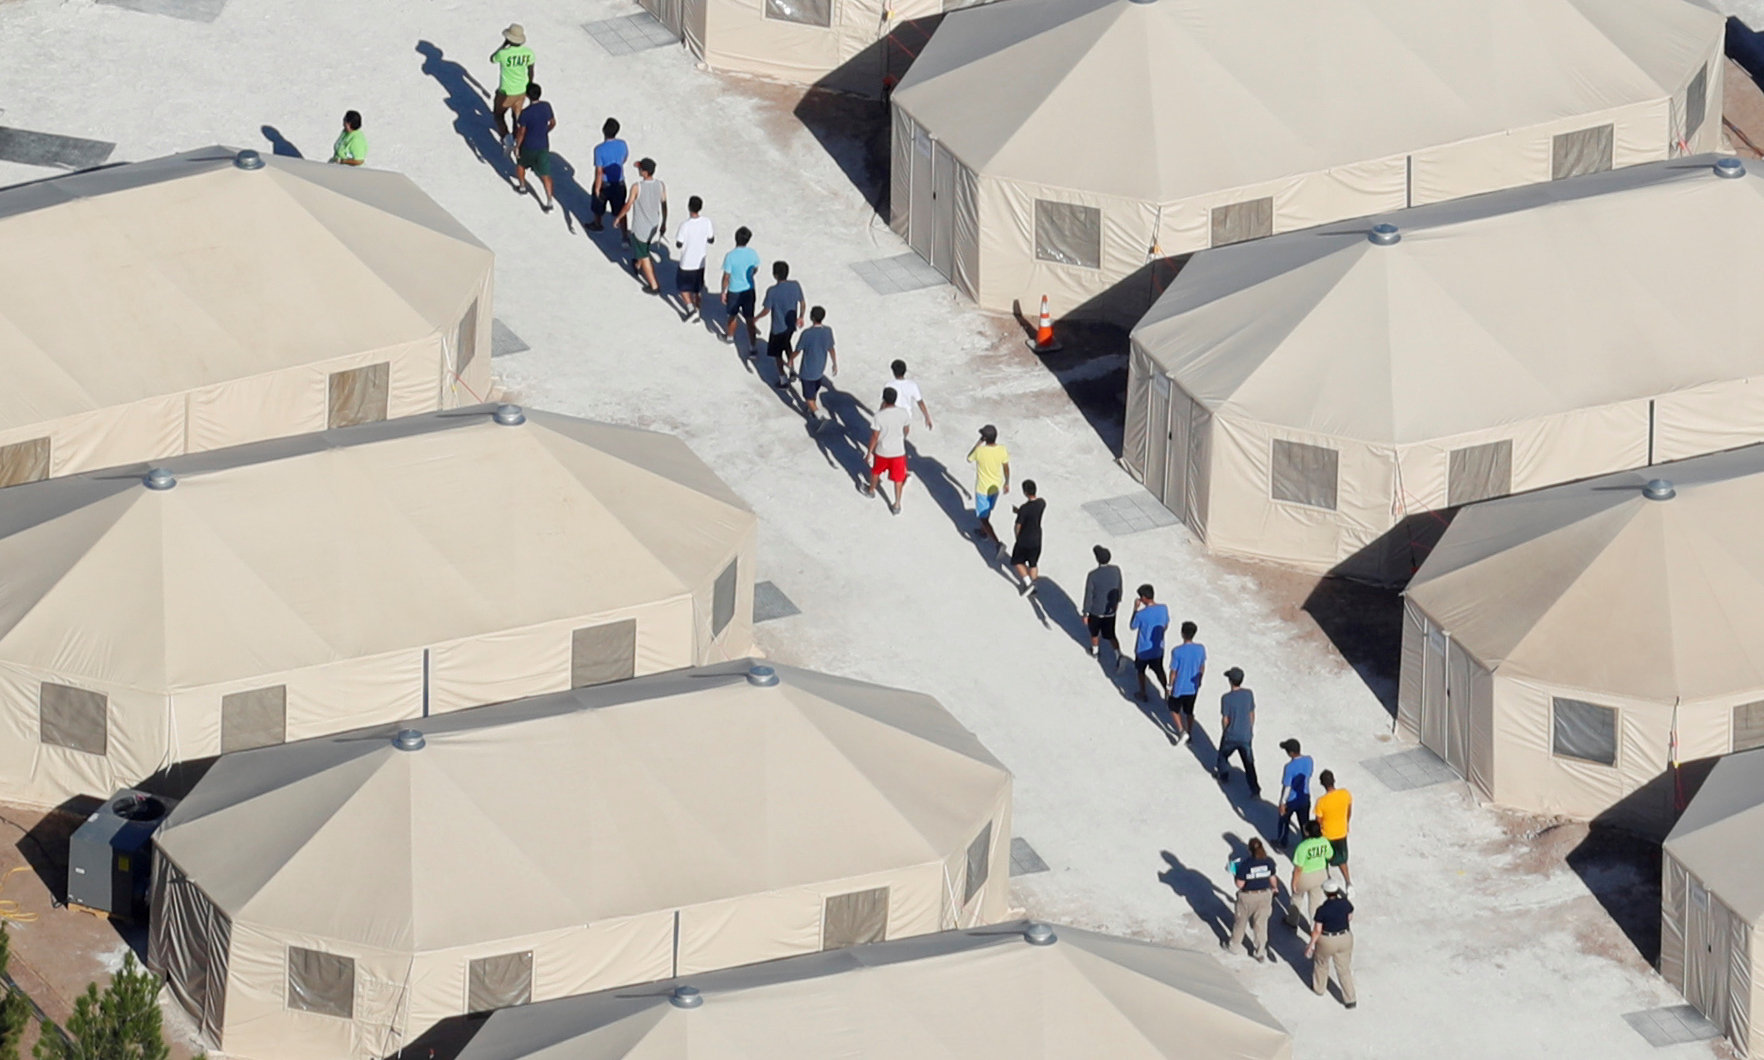 Jueza supervisor evalue condiciones niños migrantes Texas